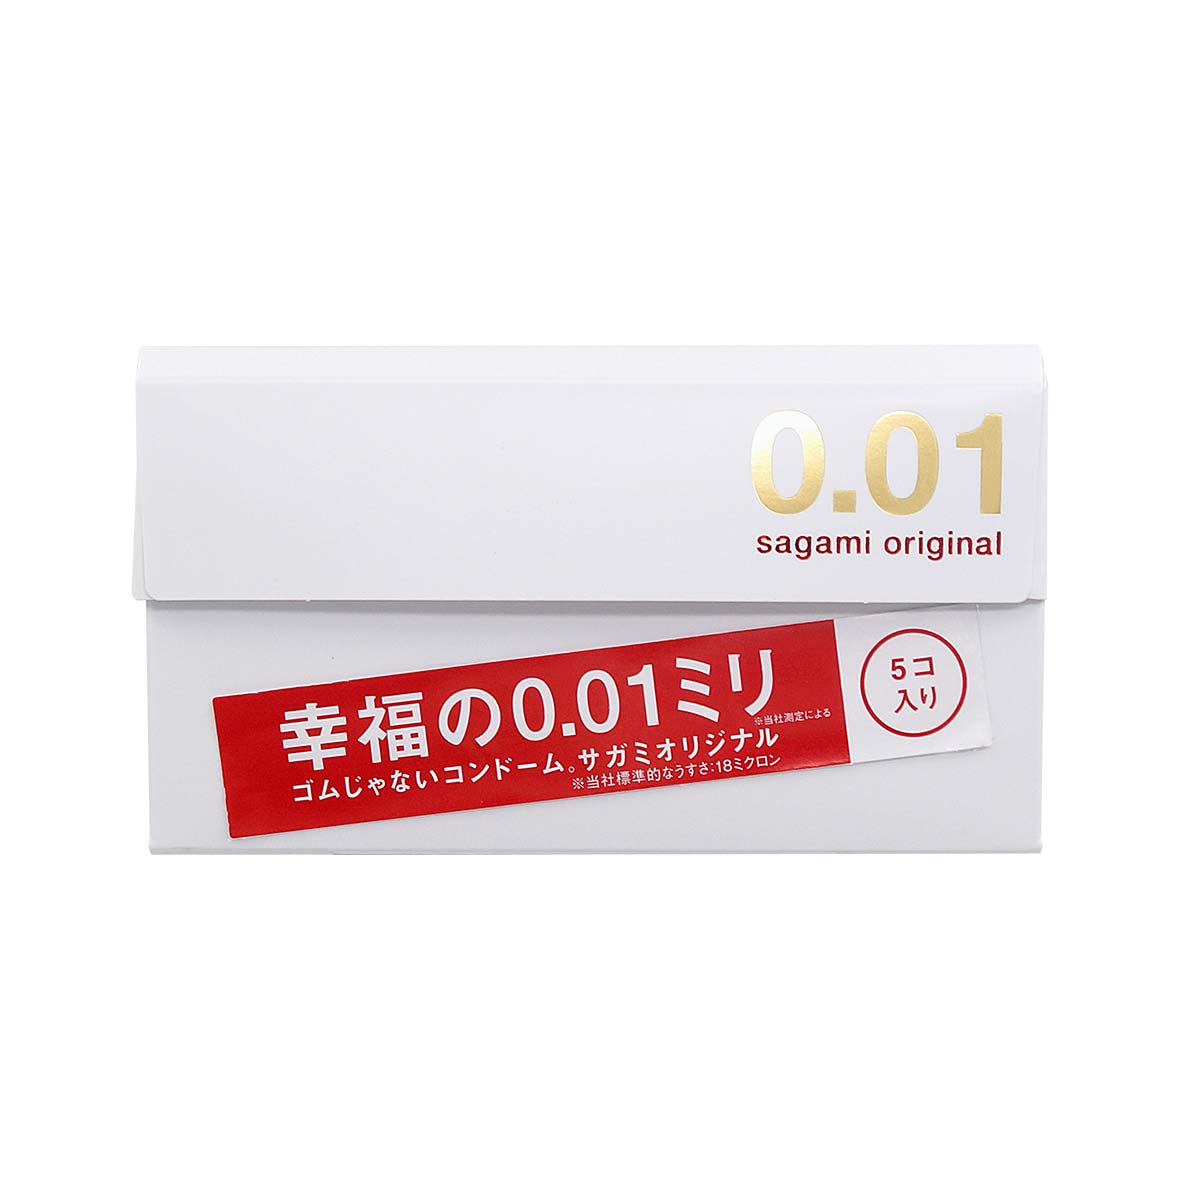 Sagami Original 0.01 5's Pack PU Condom-p_2